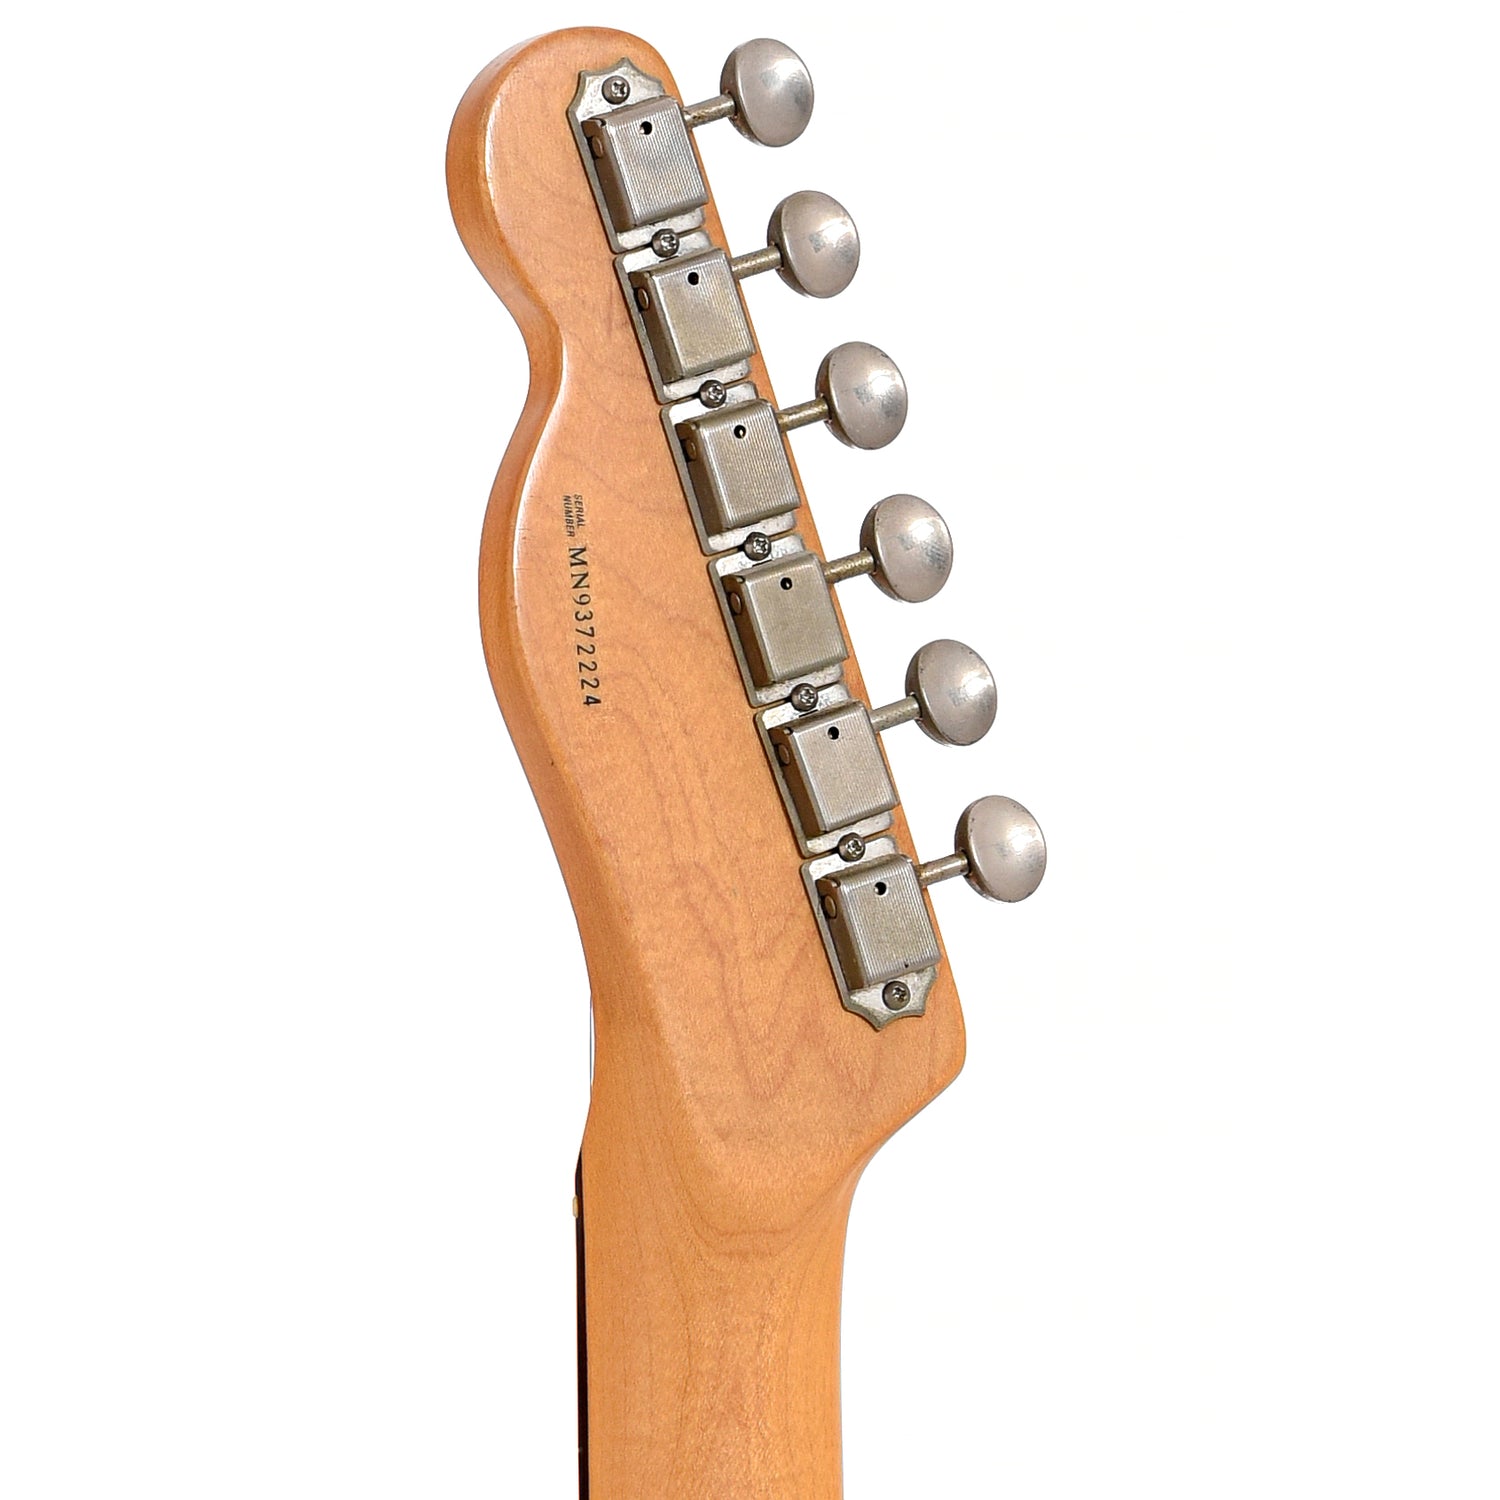 Back headstock of Fender Deluxe Nashville Power Telecaster